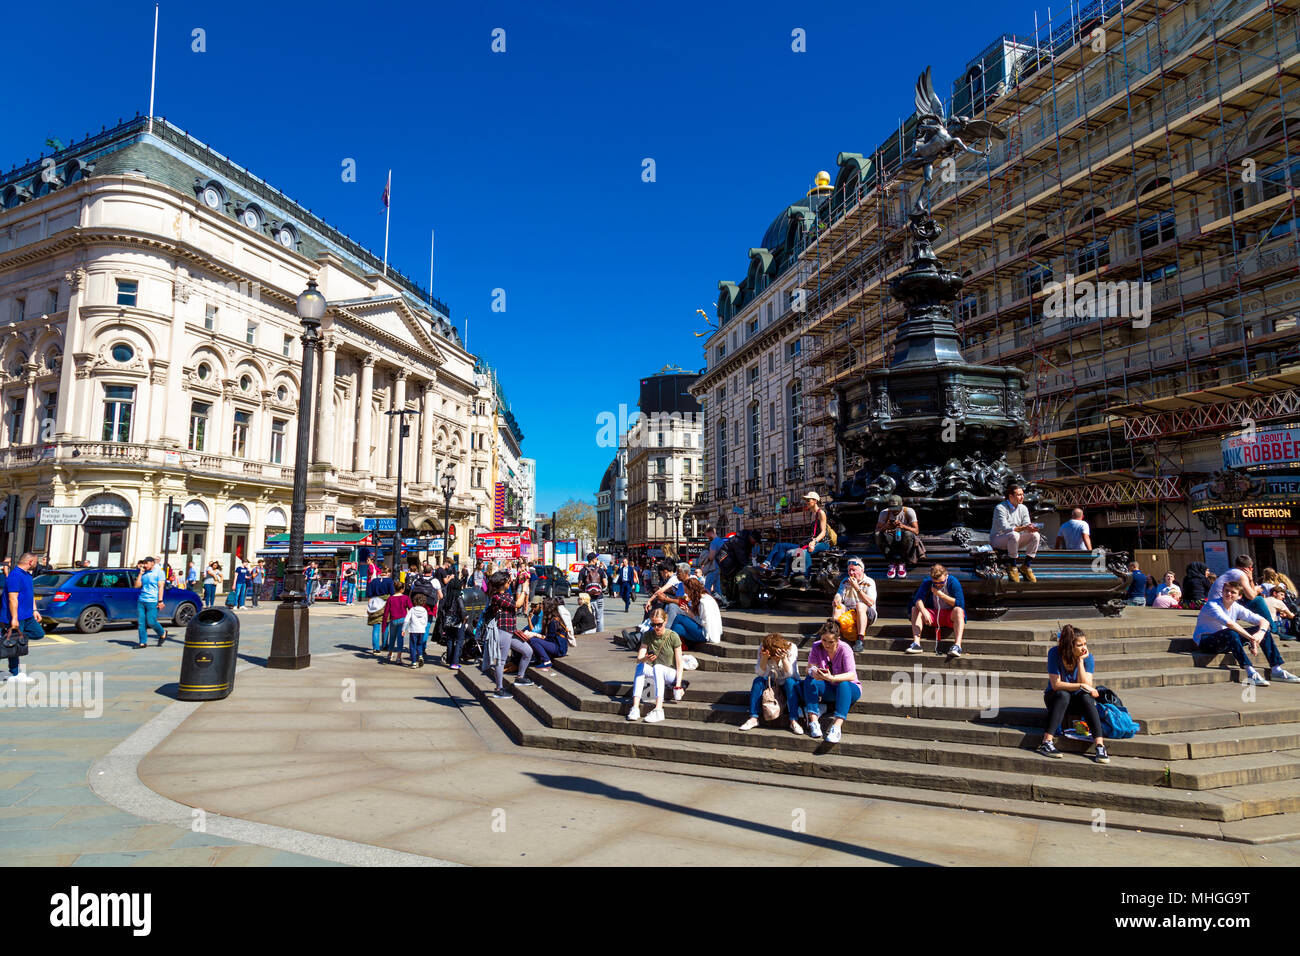 Besetzt Piccadilly Circus mit Touristen sitzen auf den Stufen des Shaftesbury Memorial Fountain, London, UK Stockfoto